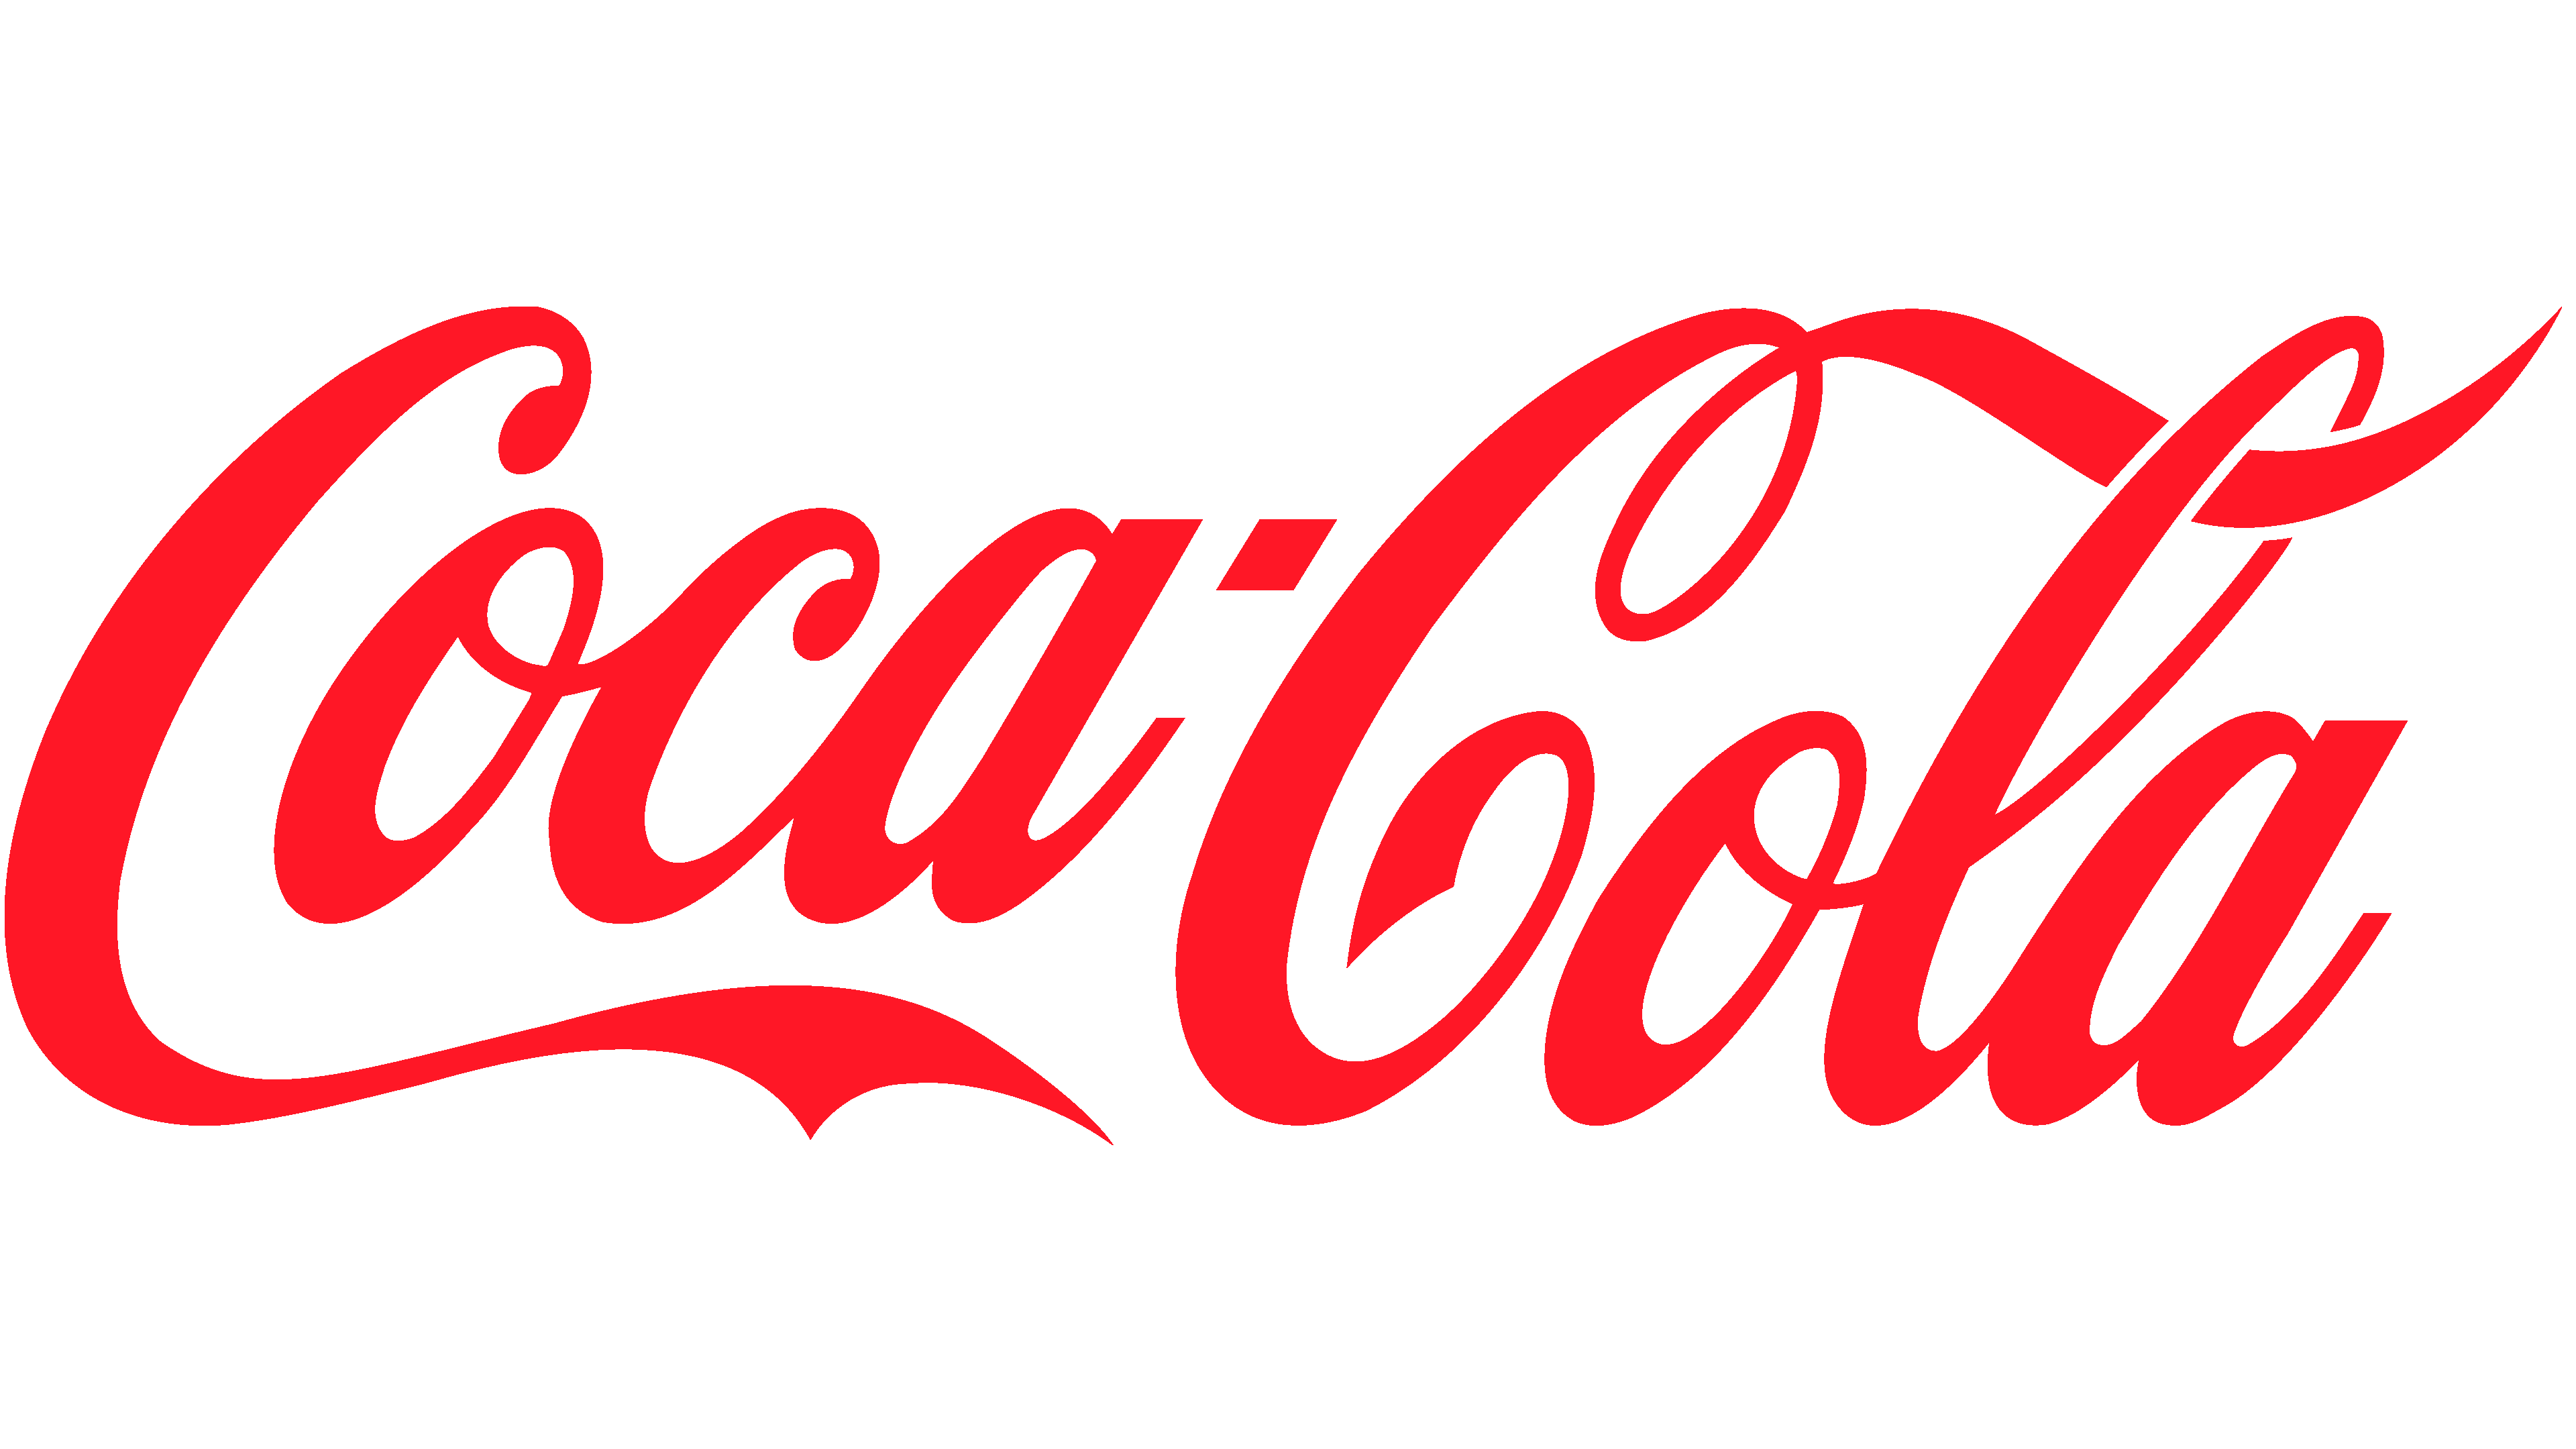 Coca Cola brand